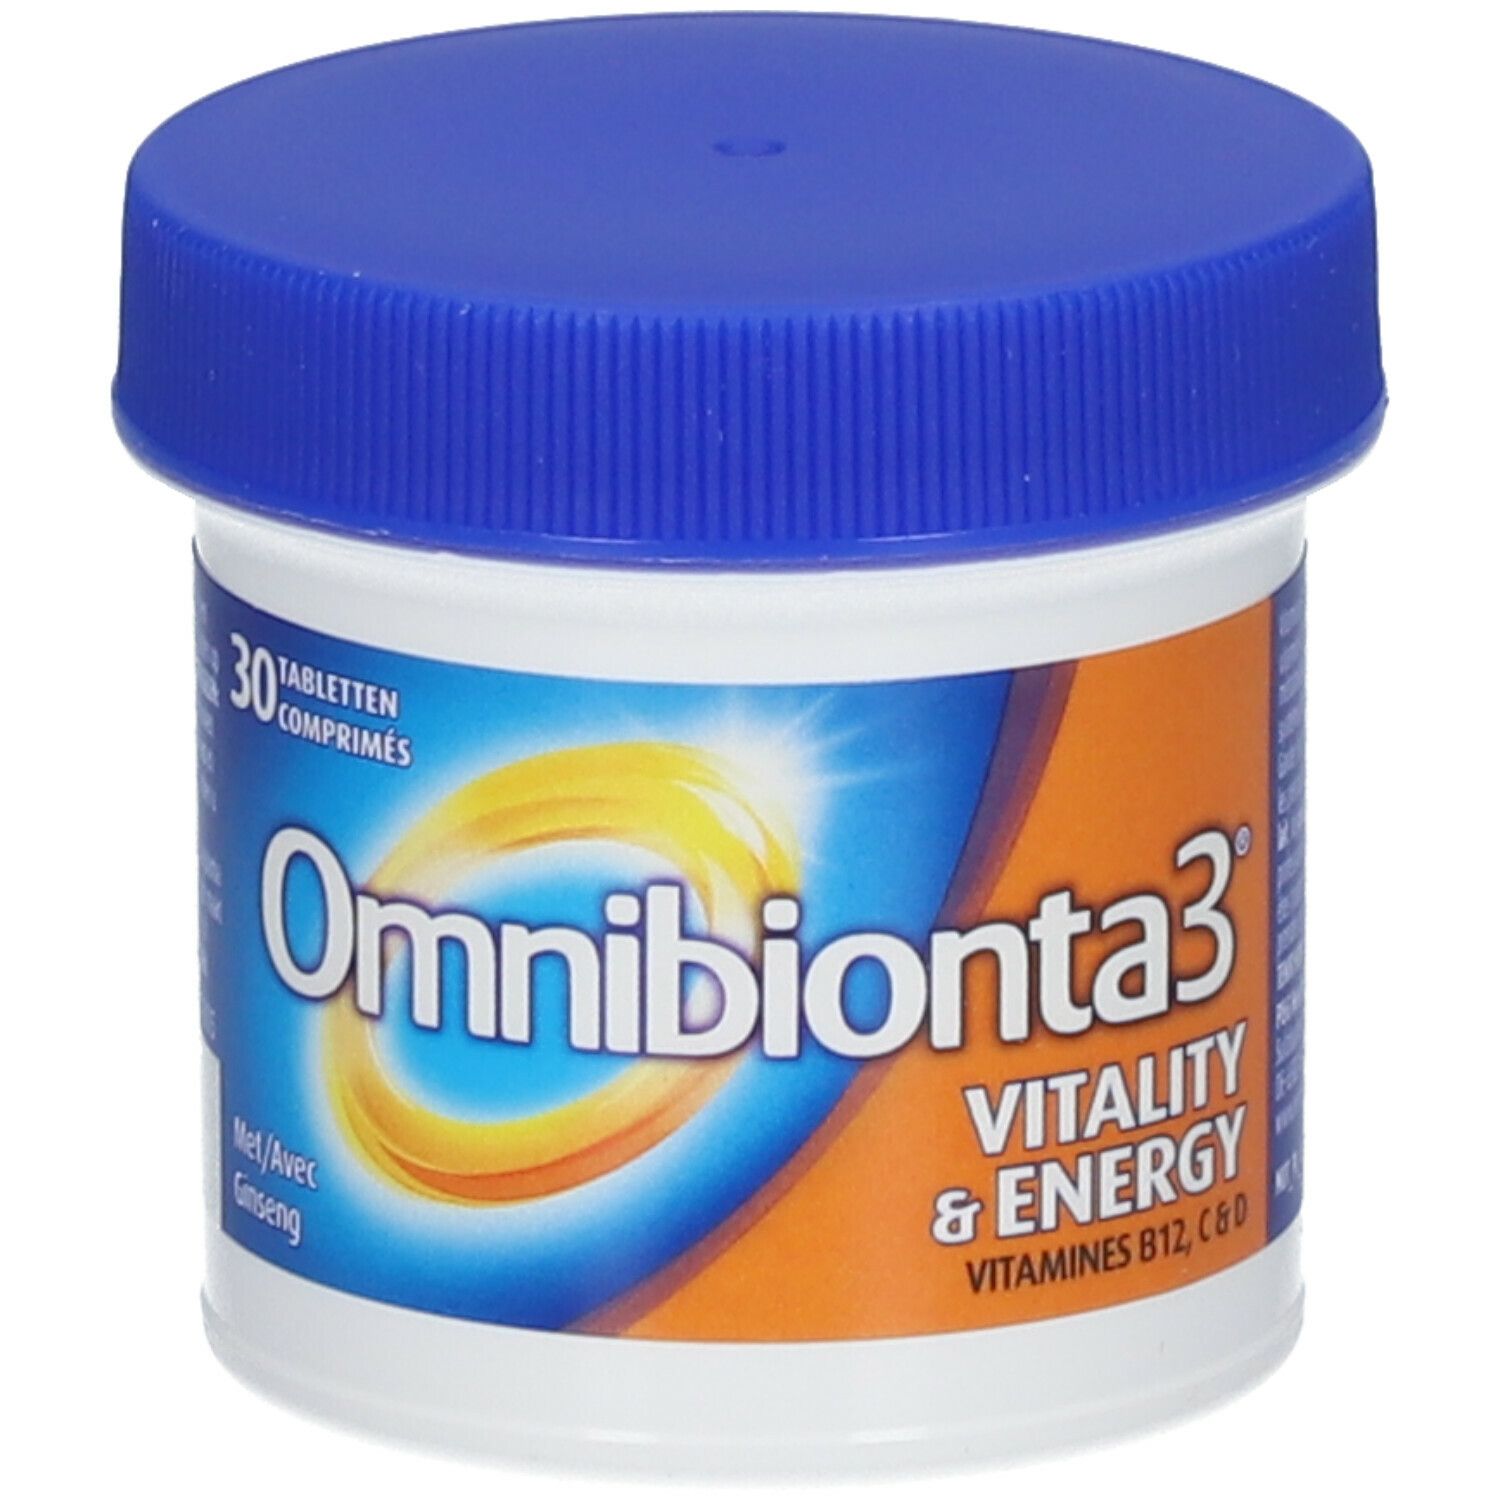 Omnibionta3® Vitality & Energy